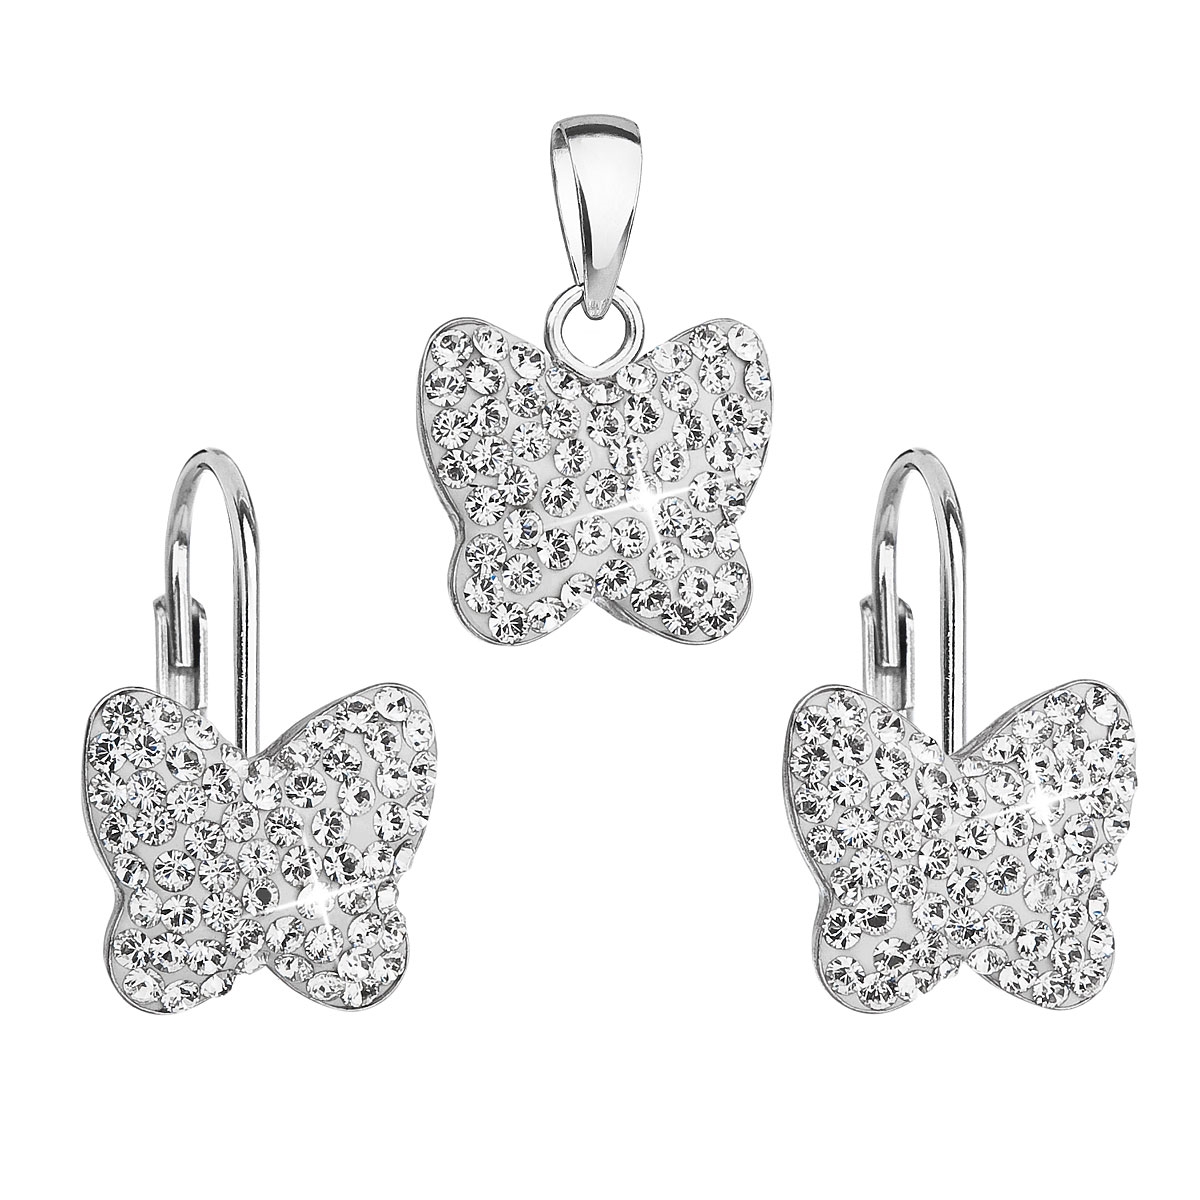 Súprava strieborných šperkov motýle s kryštálmi Crystals from Swarovski ® Crystal